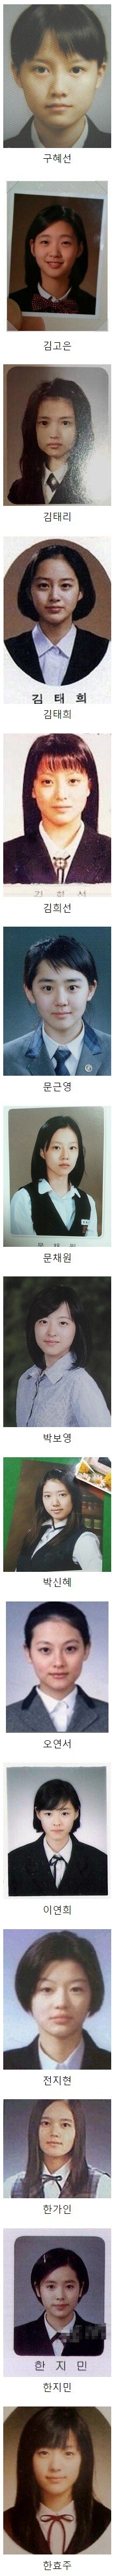 대한민국 여배우들의 졸업사진 모음